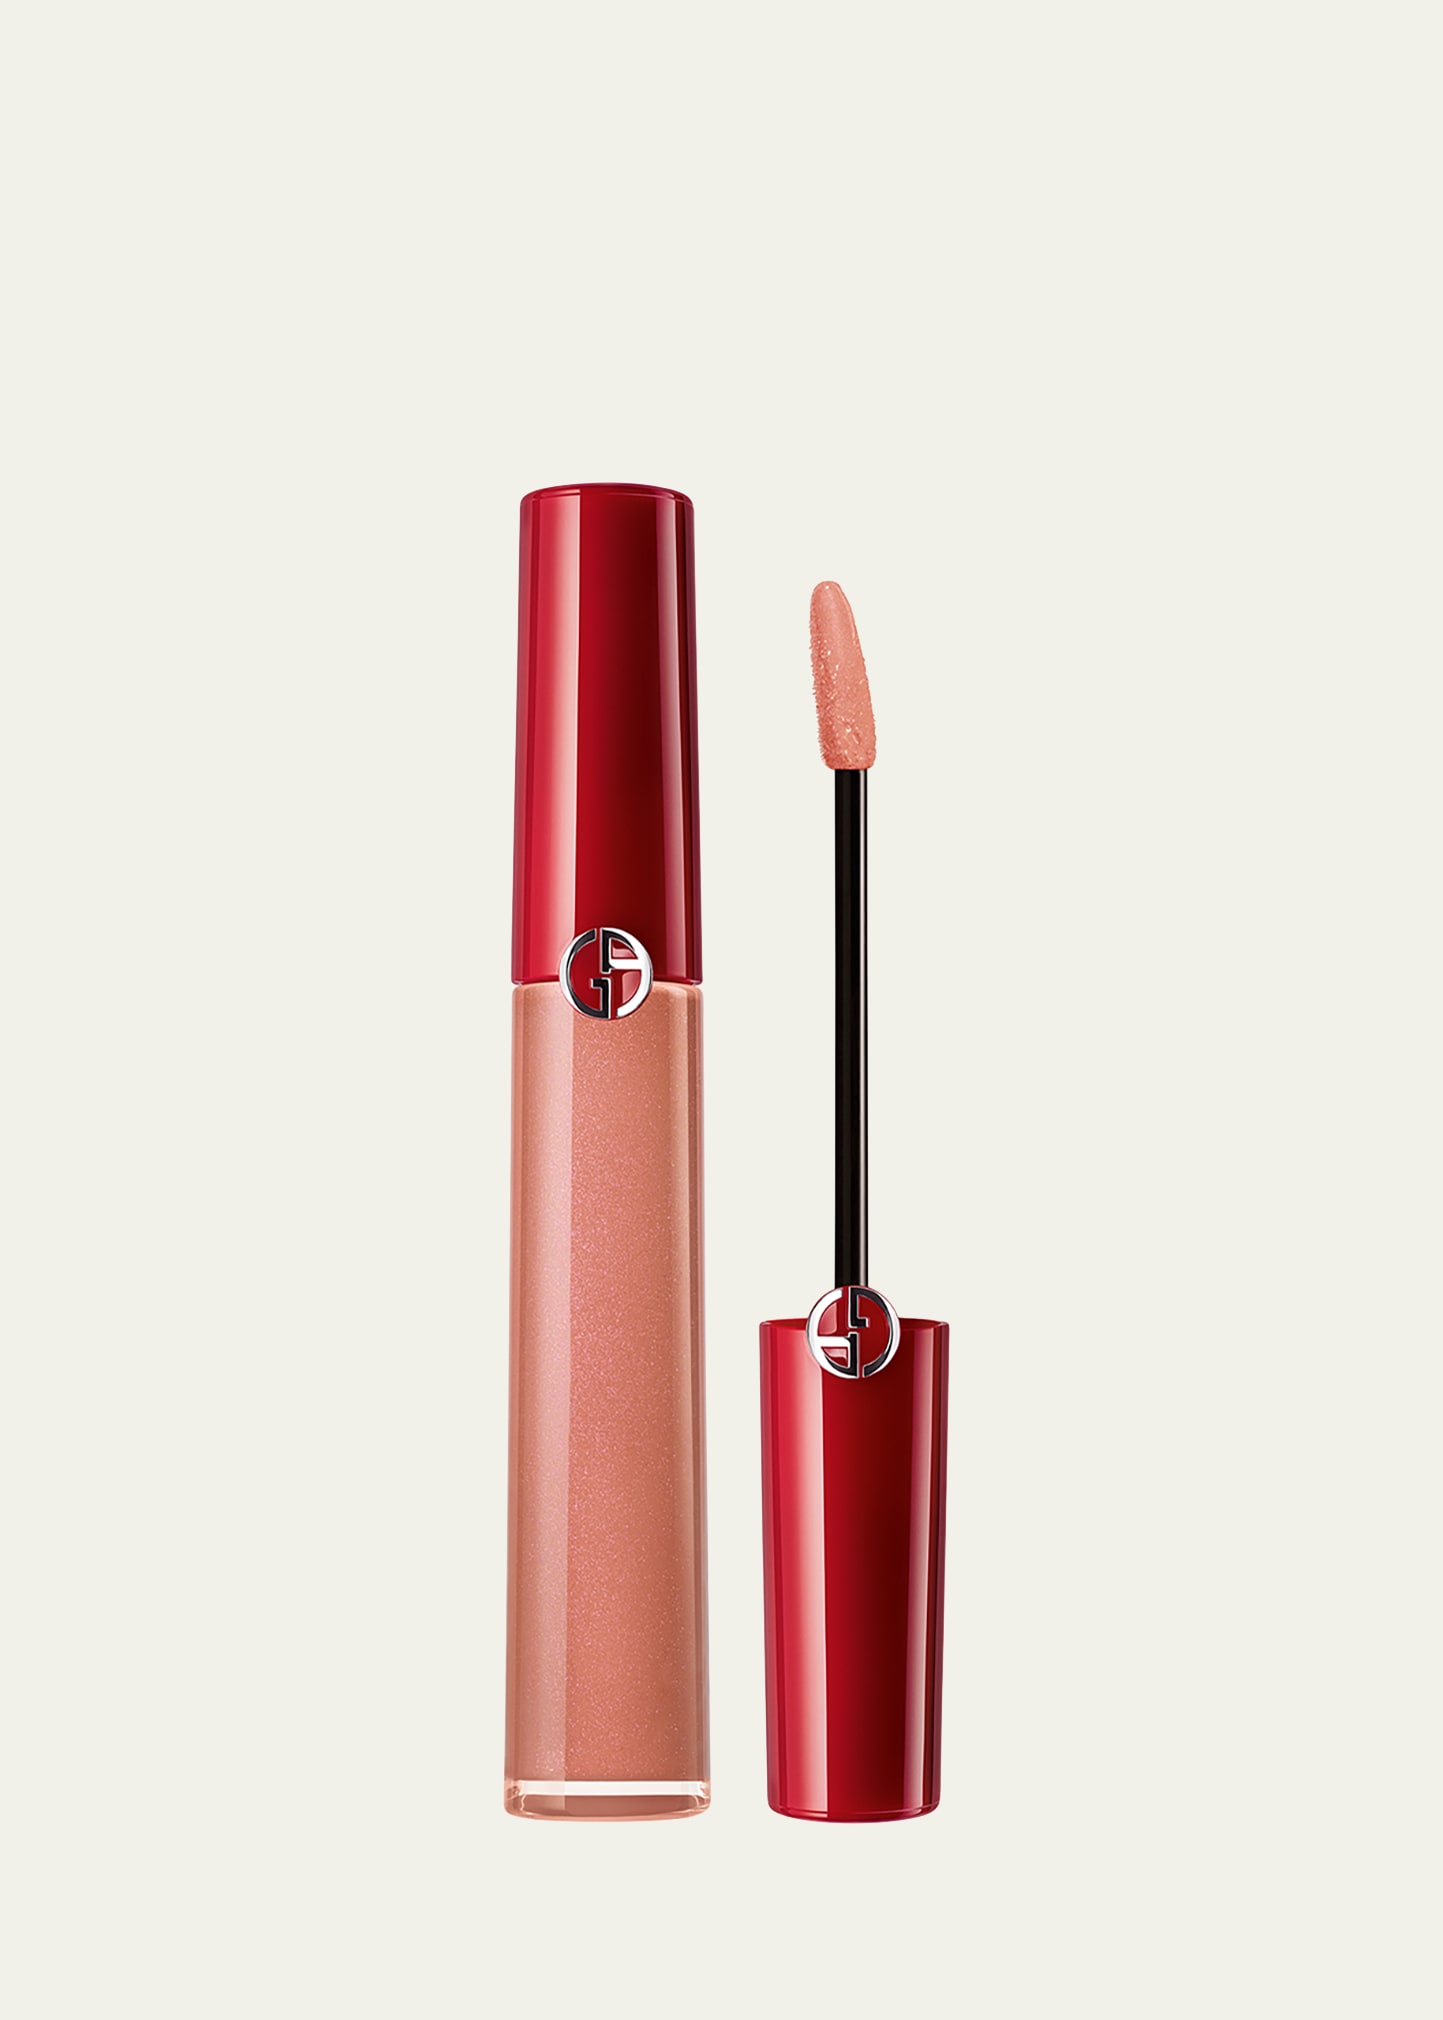 Armani Beauty Lip Maestro Liquid Lipstick In 109 Tan